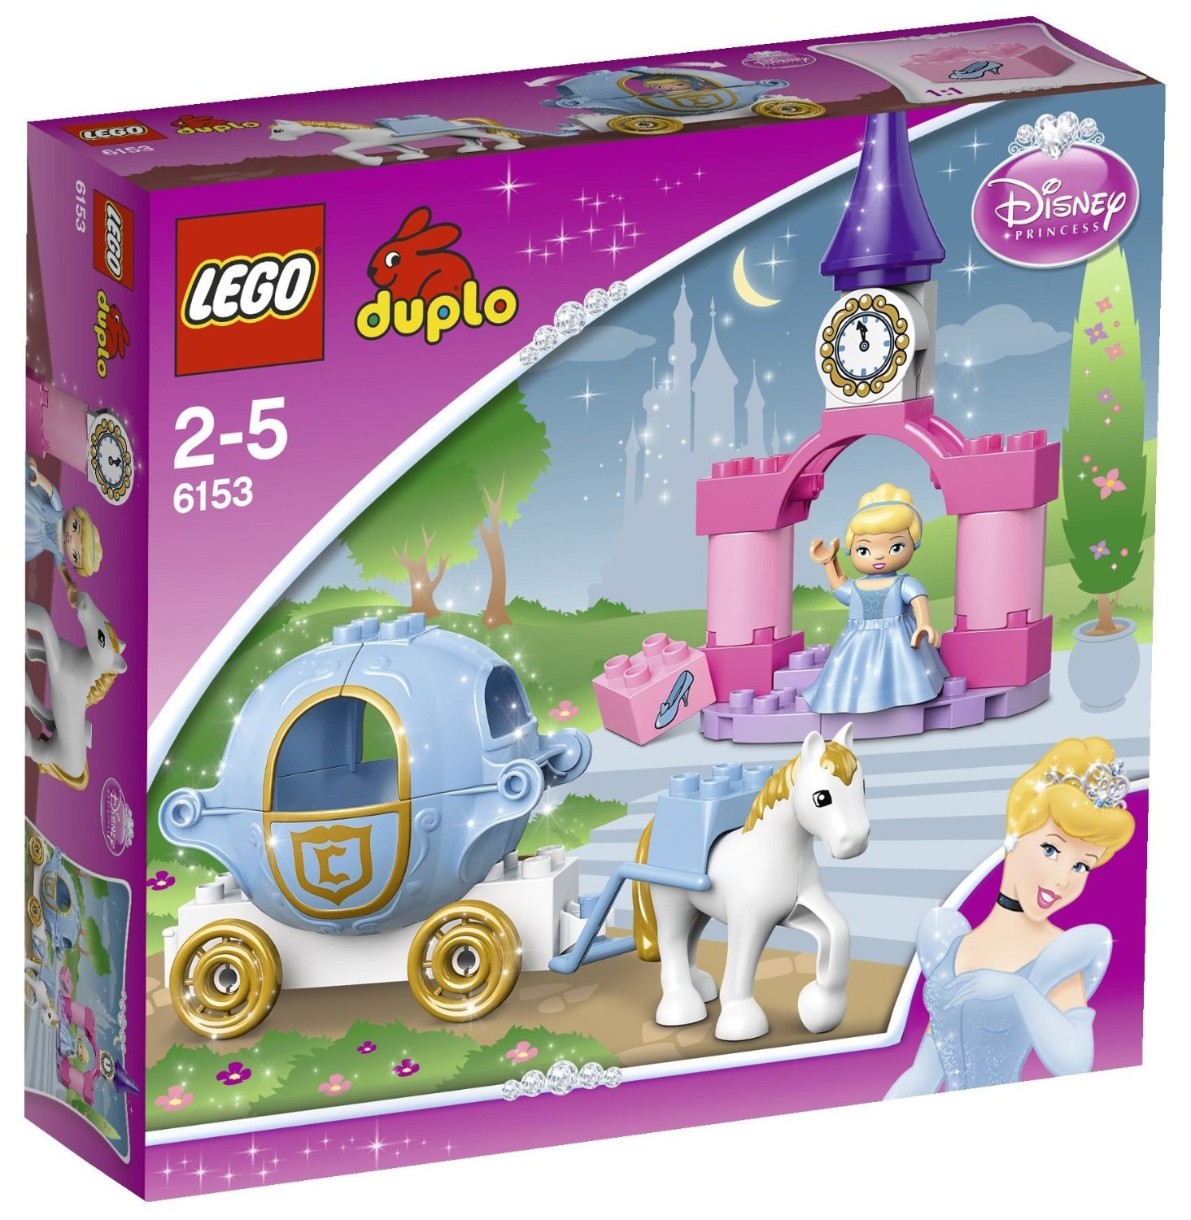 Set de construcție Lego Duplo: Cinderella's Carriage (6153)